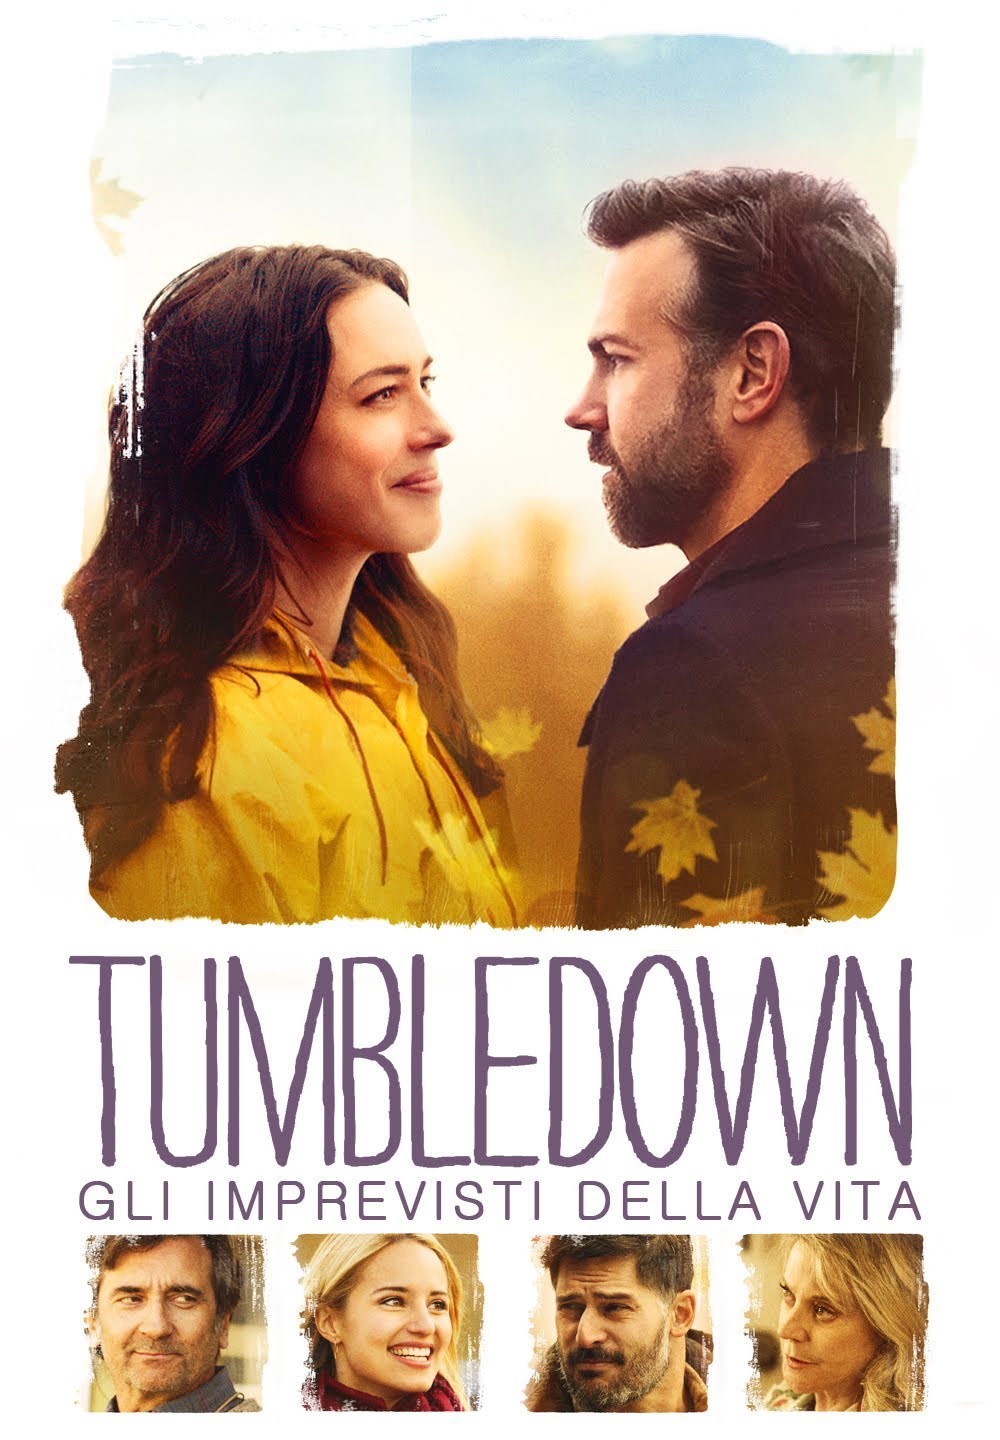 Tumbledown – Gli imprevisti della vita [HD] (2015)